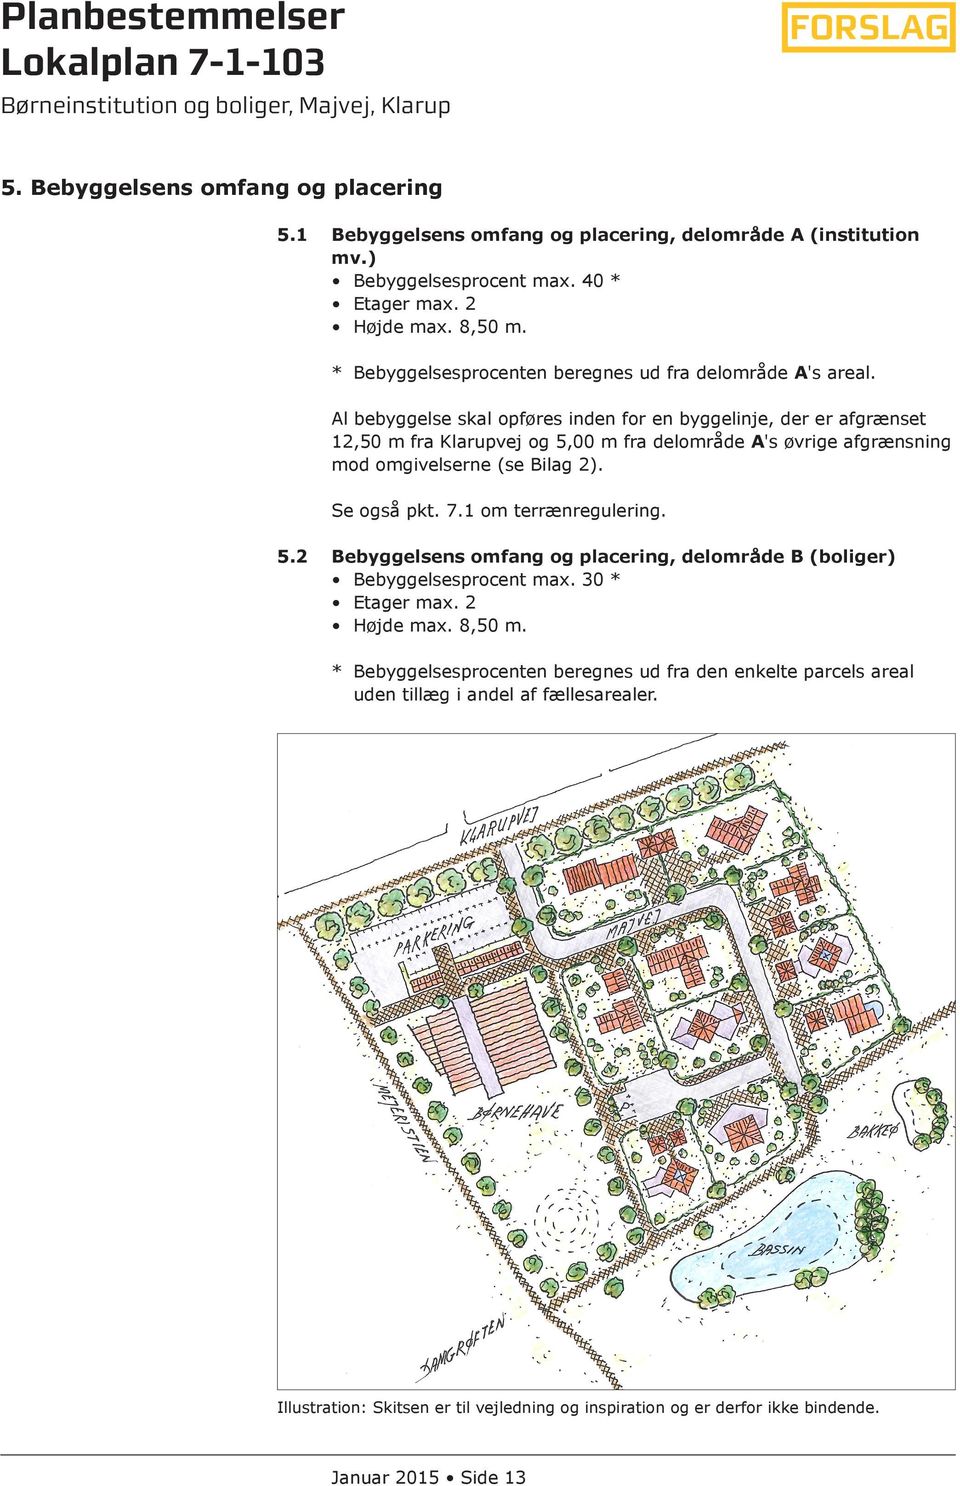 Al bebyggelse skal opføres inden for en byggelinje, der er afgrænset 12,50 m fra Klarupvej og 5,00 m fra delområde A's øvrige afgrænsning mod omgivelserne (se Bilag 2). Se også pkt. 7.